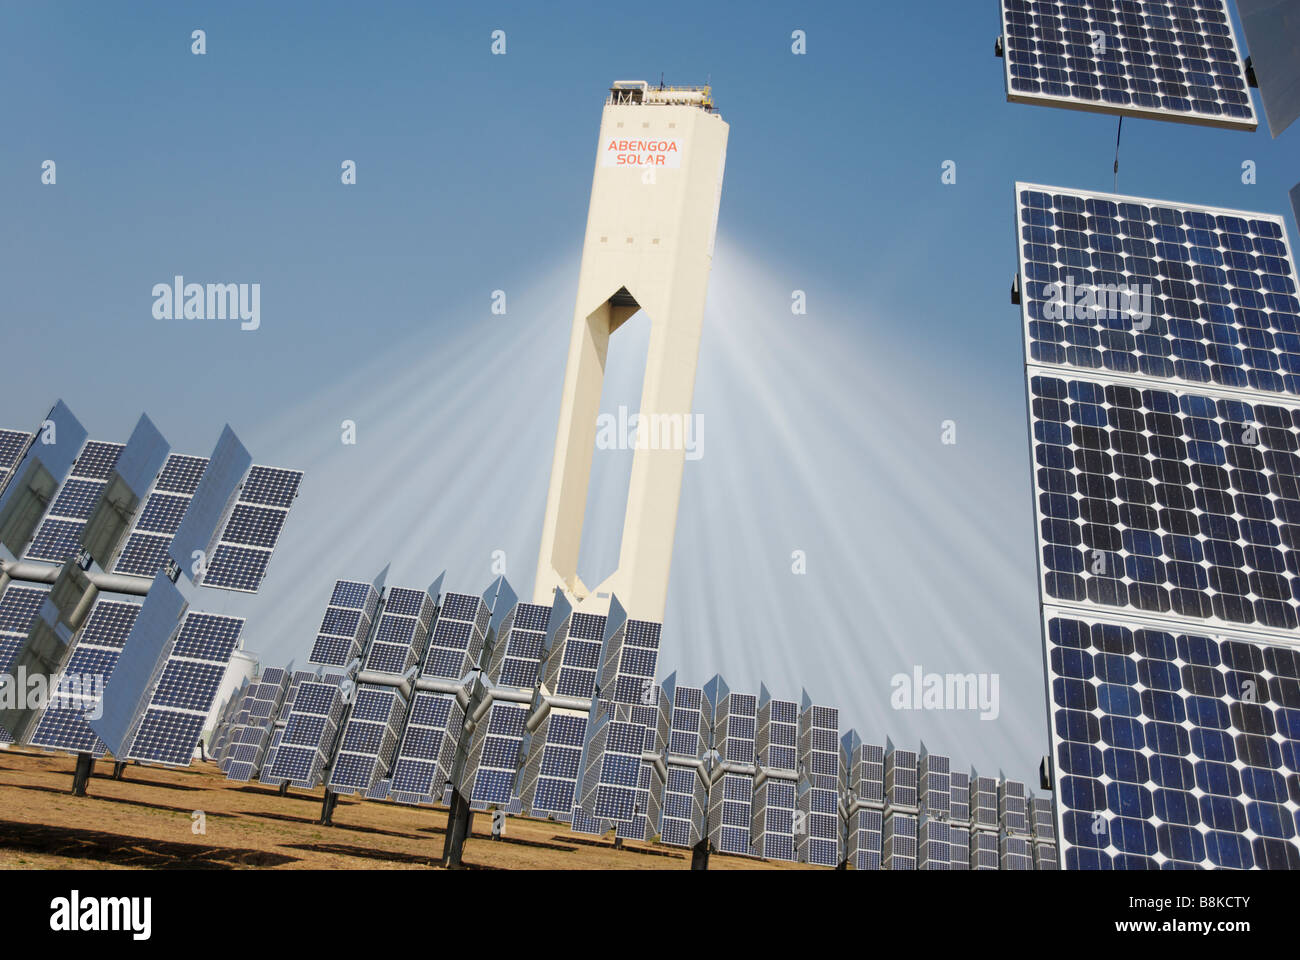 La tour solaire PS10 produit nettoyer le pouvoir thermoélectrique du soleil - Abengoa Solúcar plate-forme en Andalousie Espagne Banque D'Images